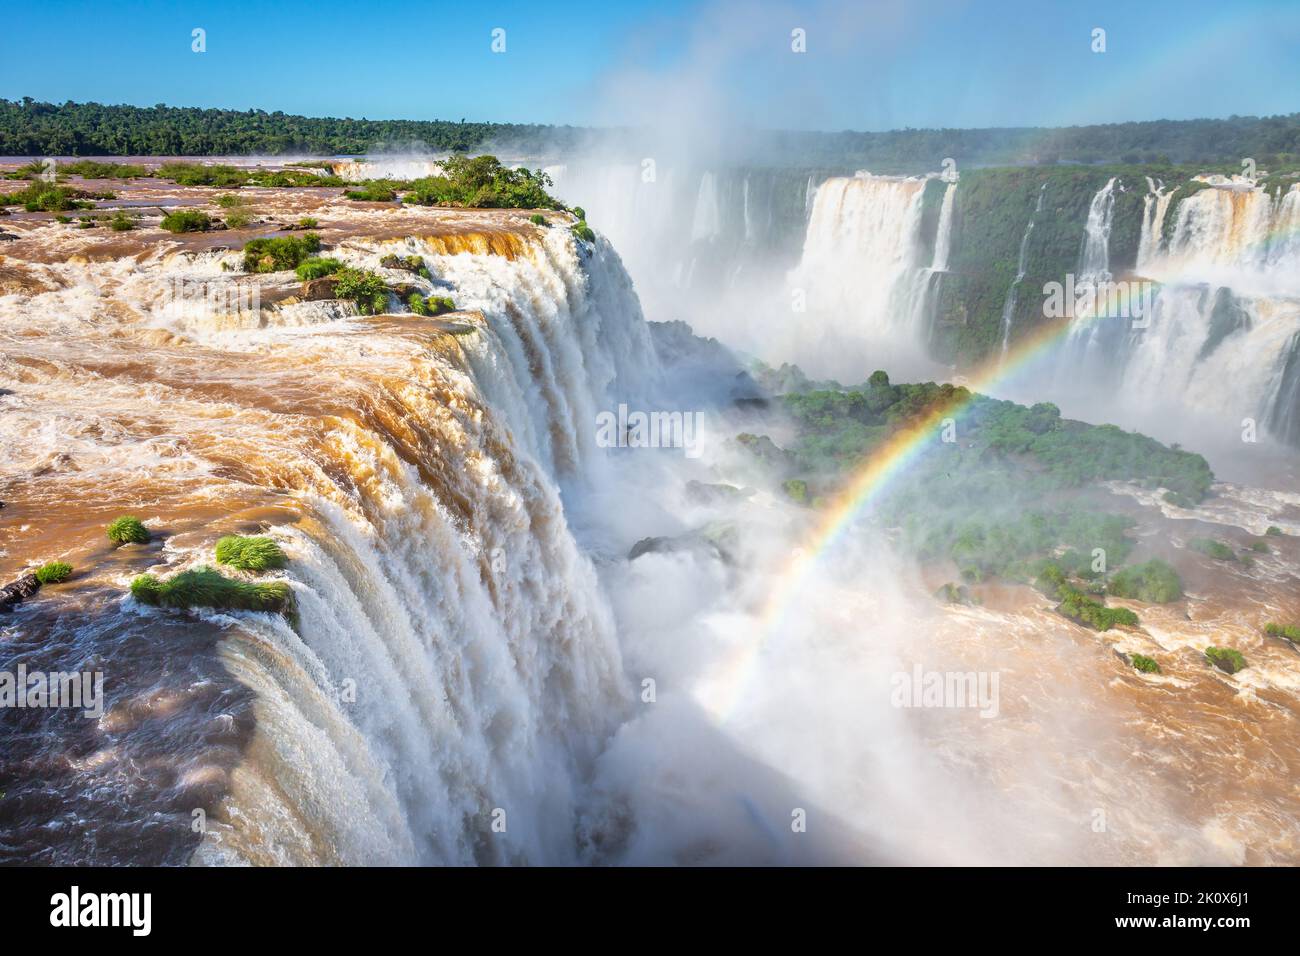 Cascate di Iguazu suggestivo paesaggio con arcobaleno, vista dal lato argentino Foto Stock